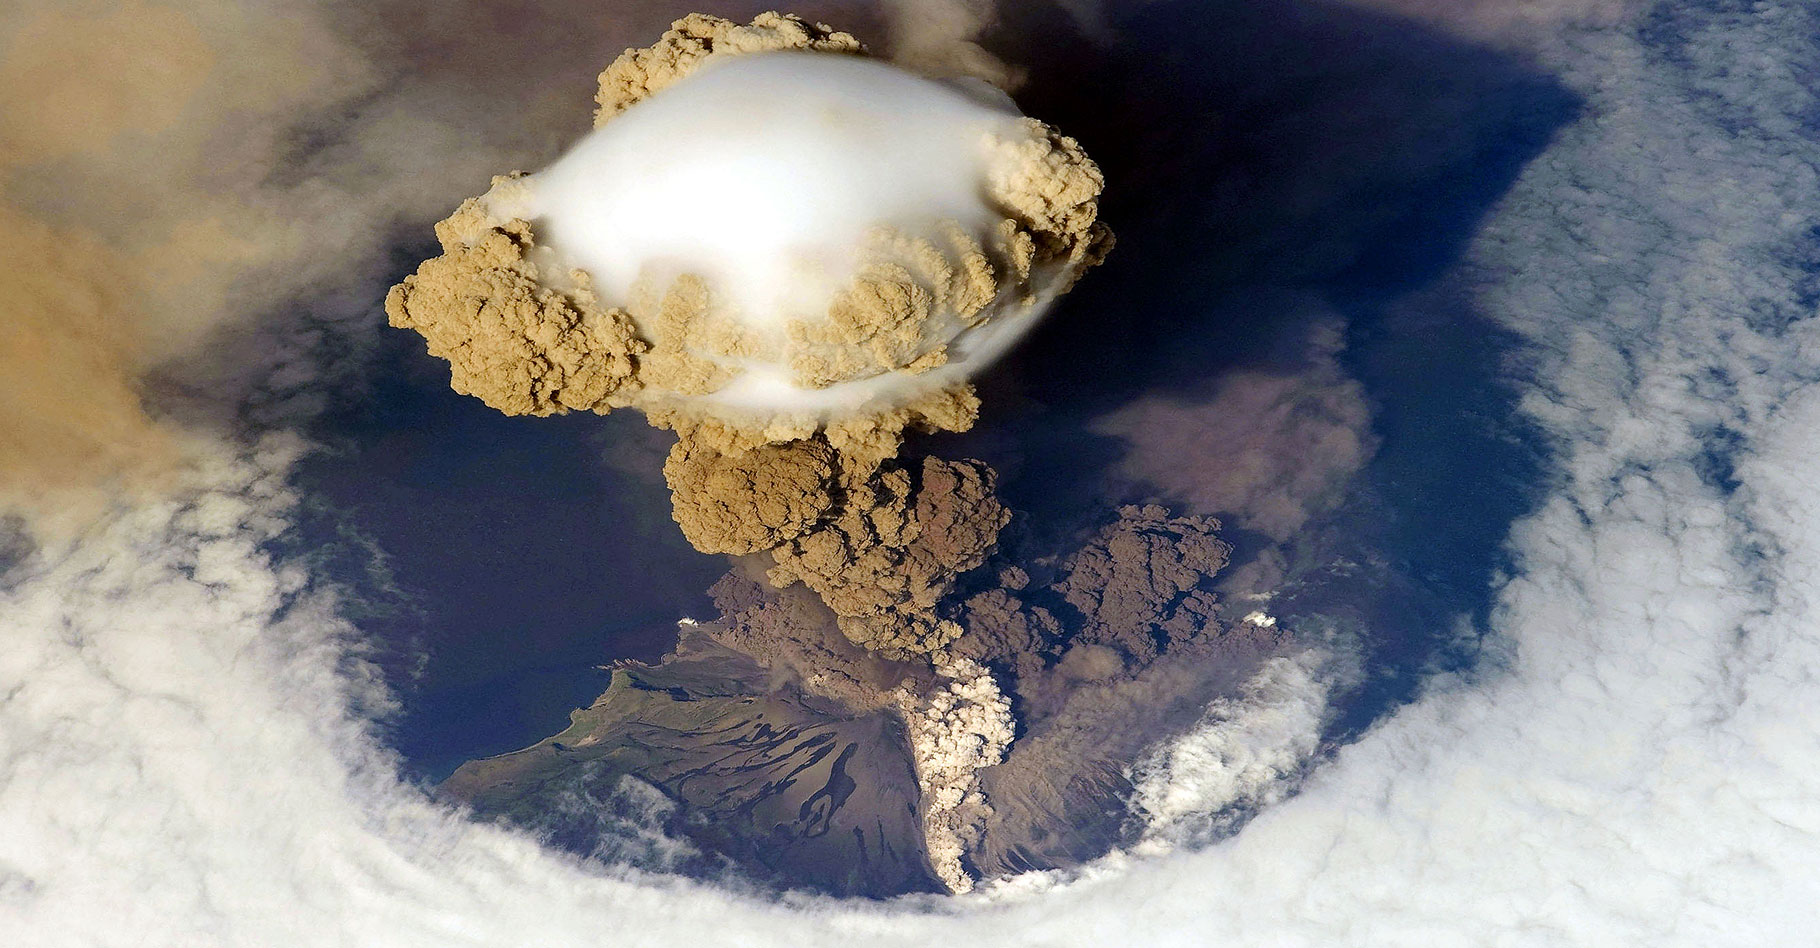 Panache volcanique du Sarytchev vu par satellite. © John - CC BY-SA 2.0